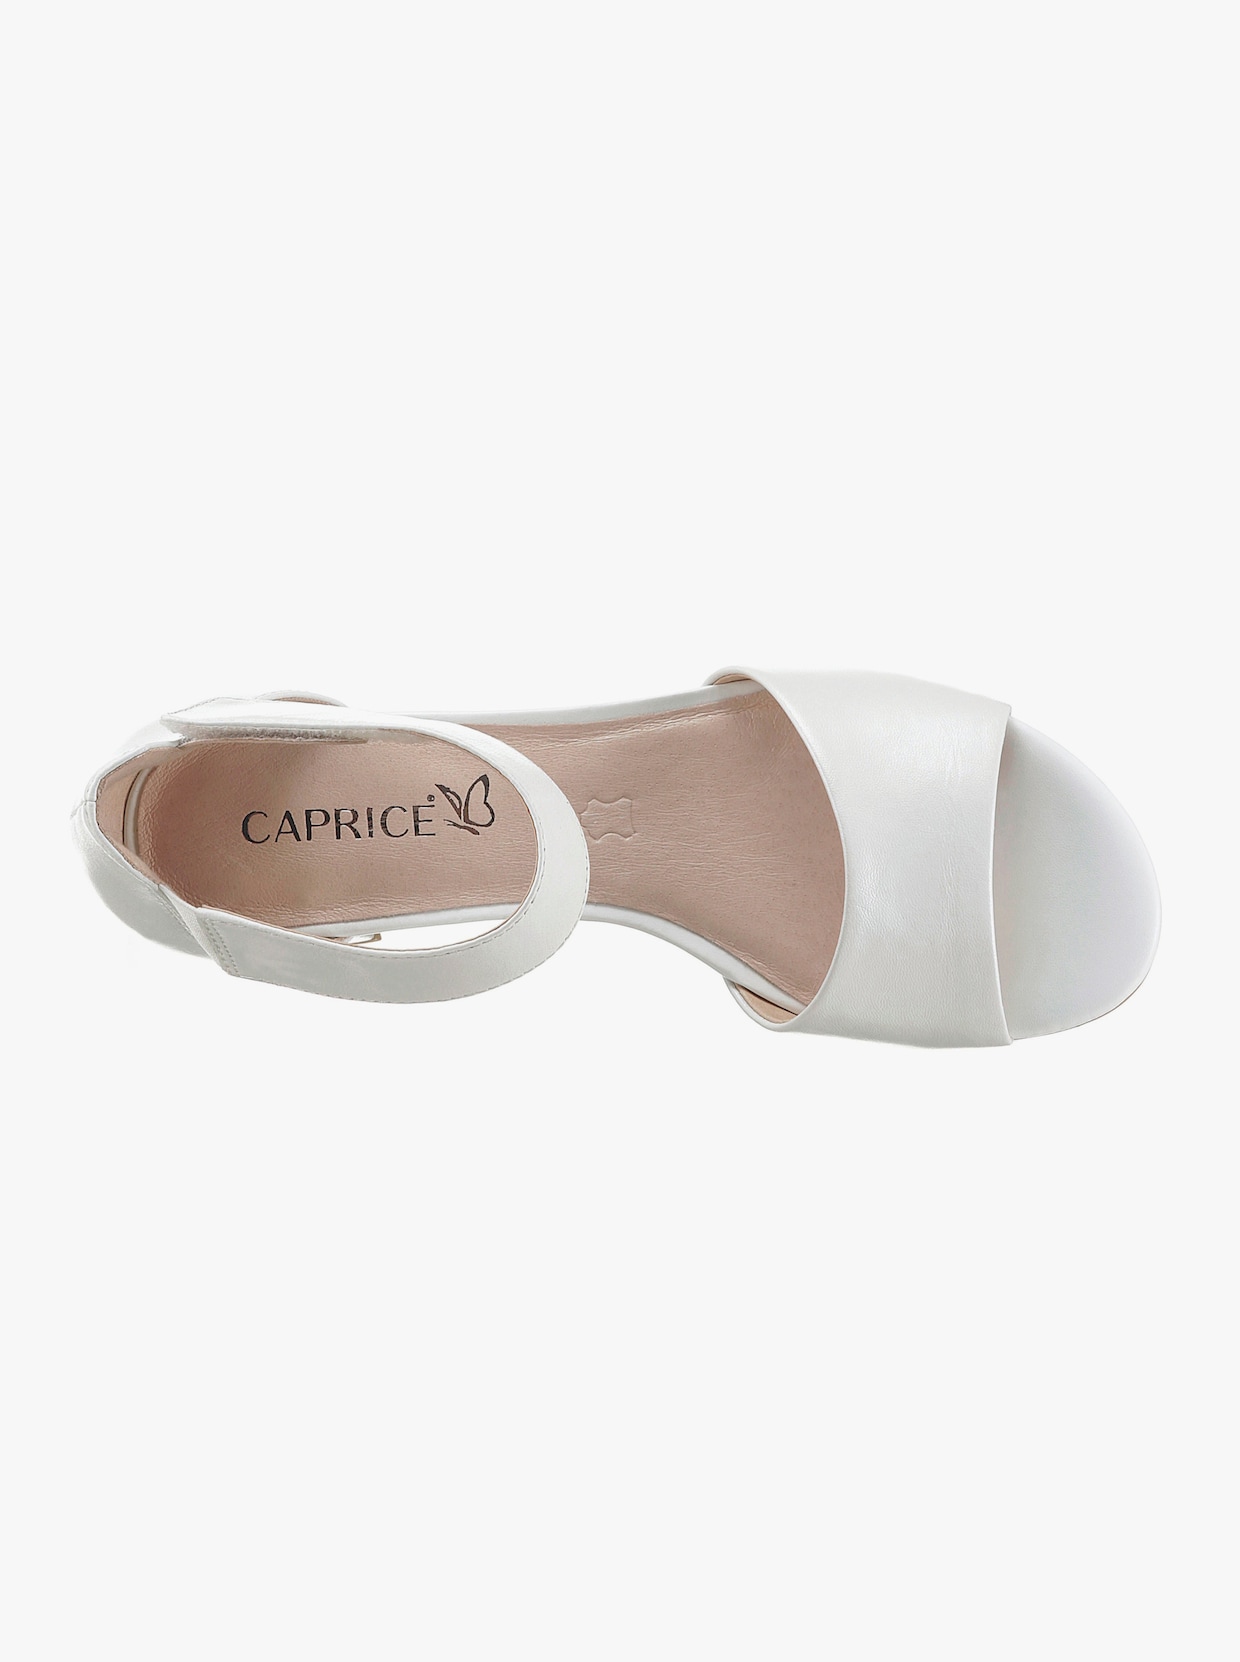 Caprice Sandalette - weiß